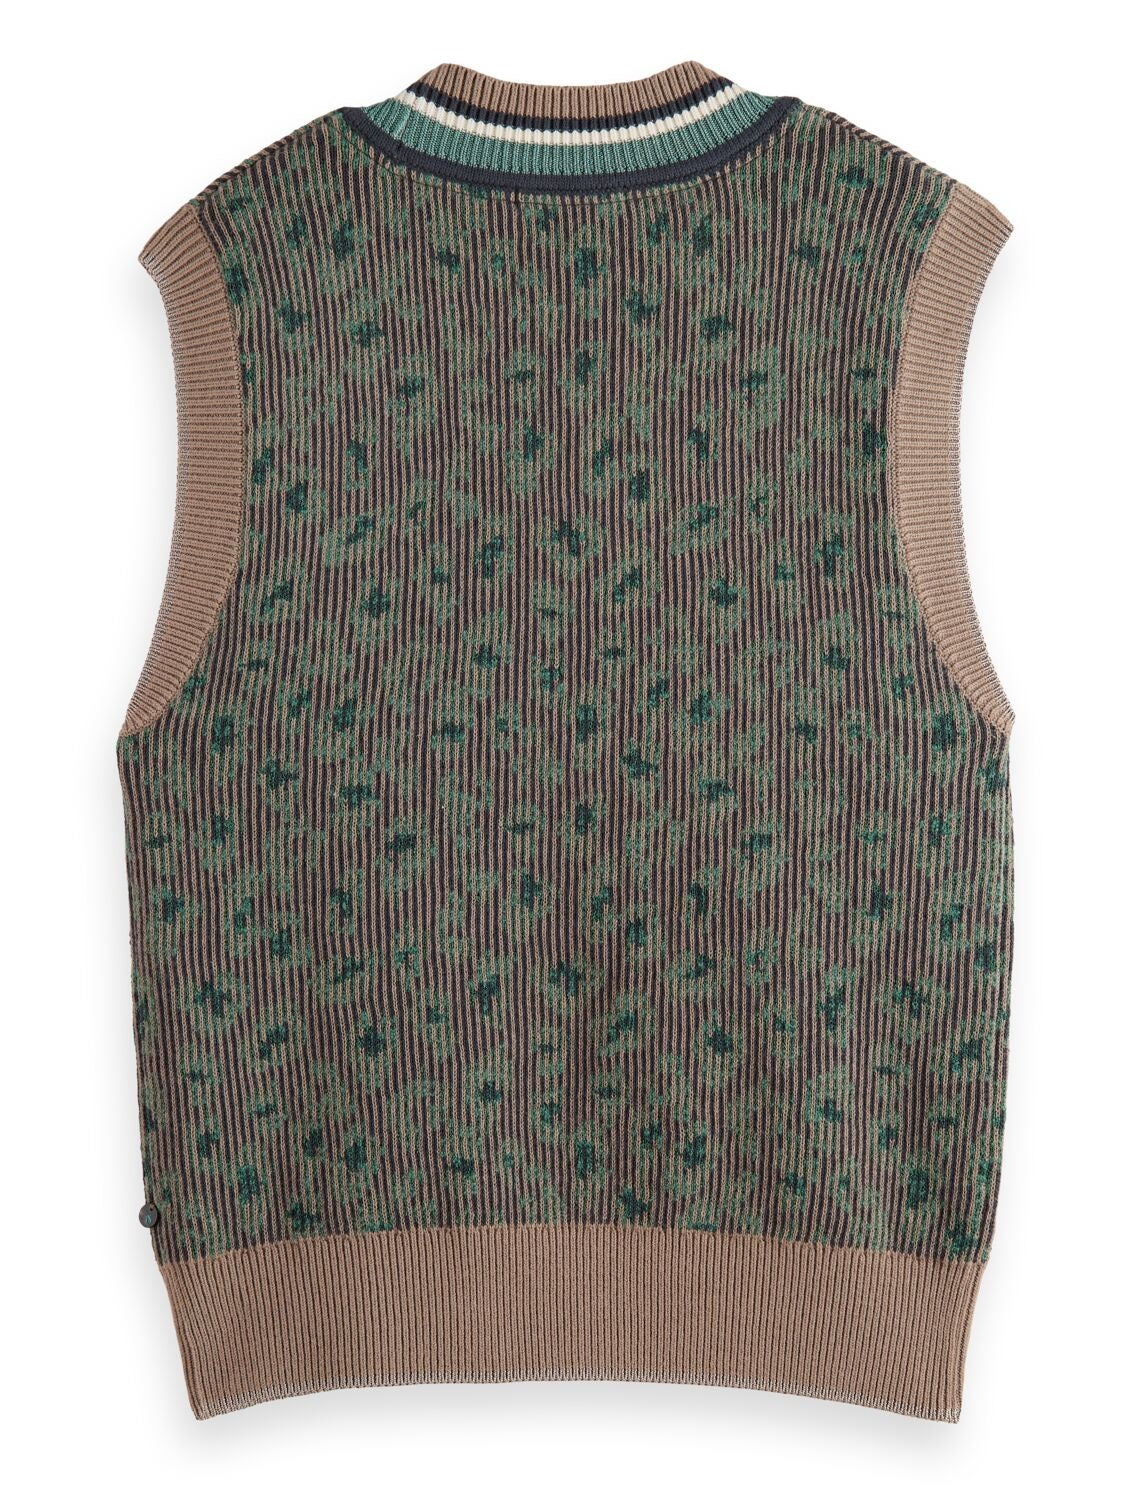 Bott soda knit vest(green)-